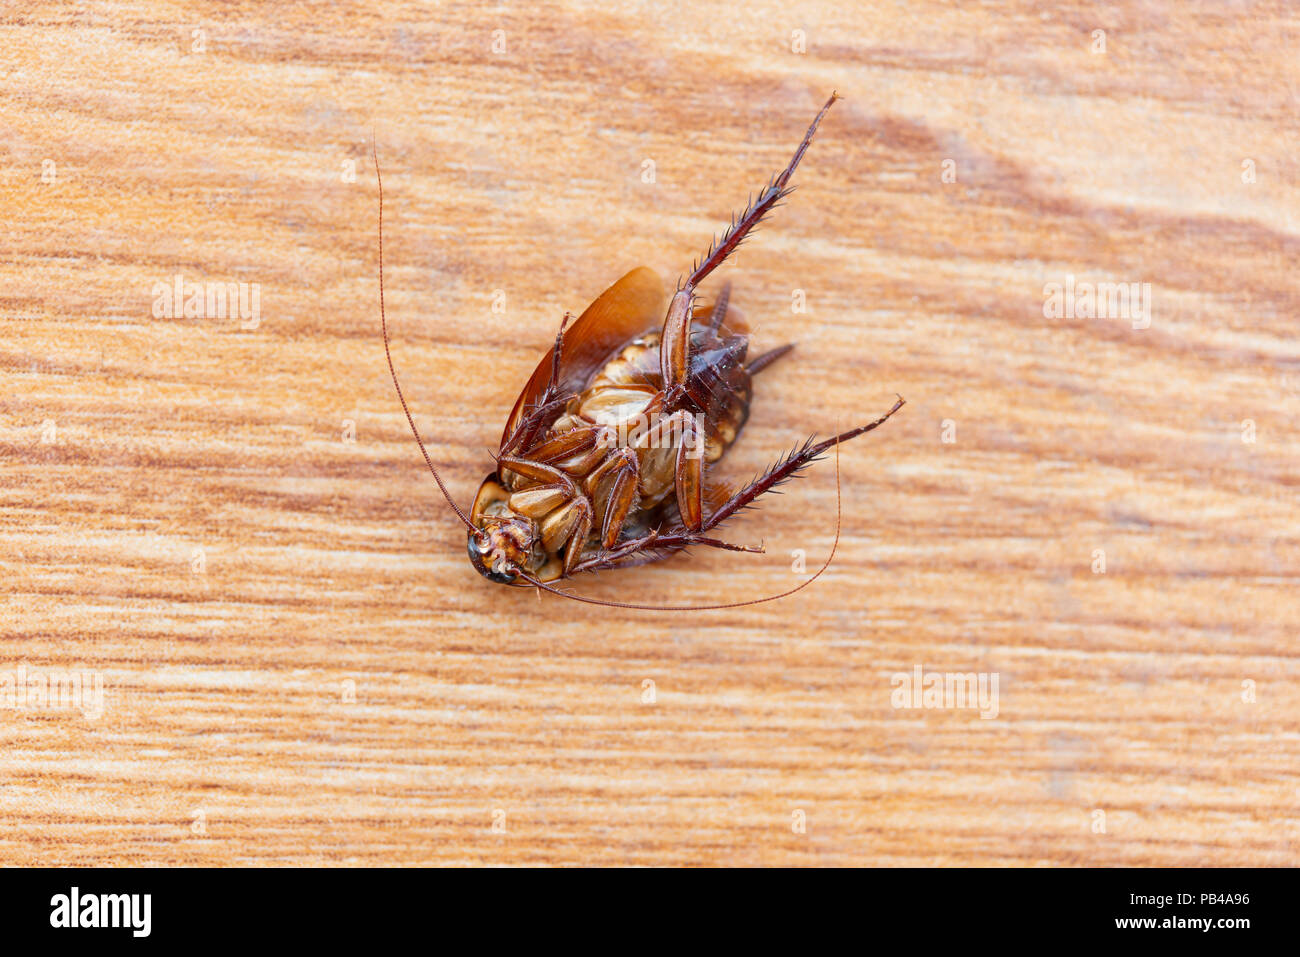 Cucaracha muerta en el suelo Foto de stock